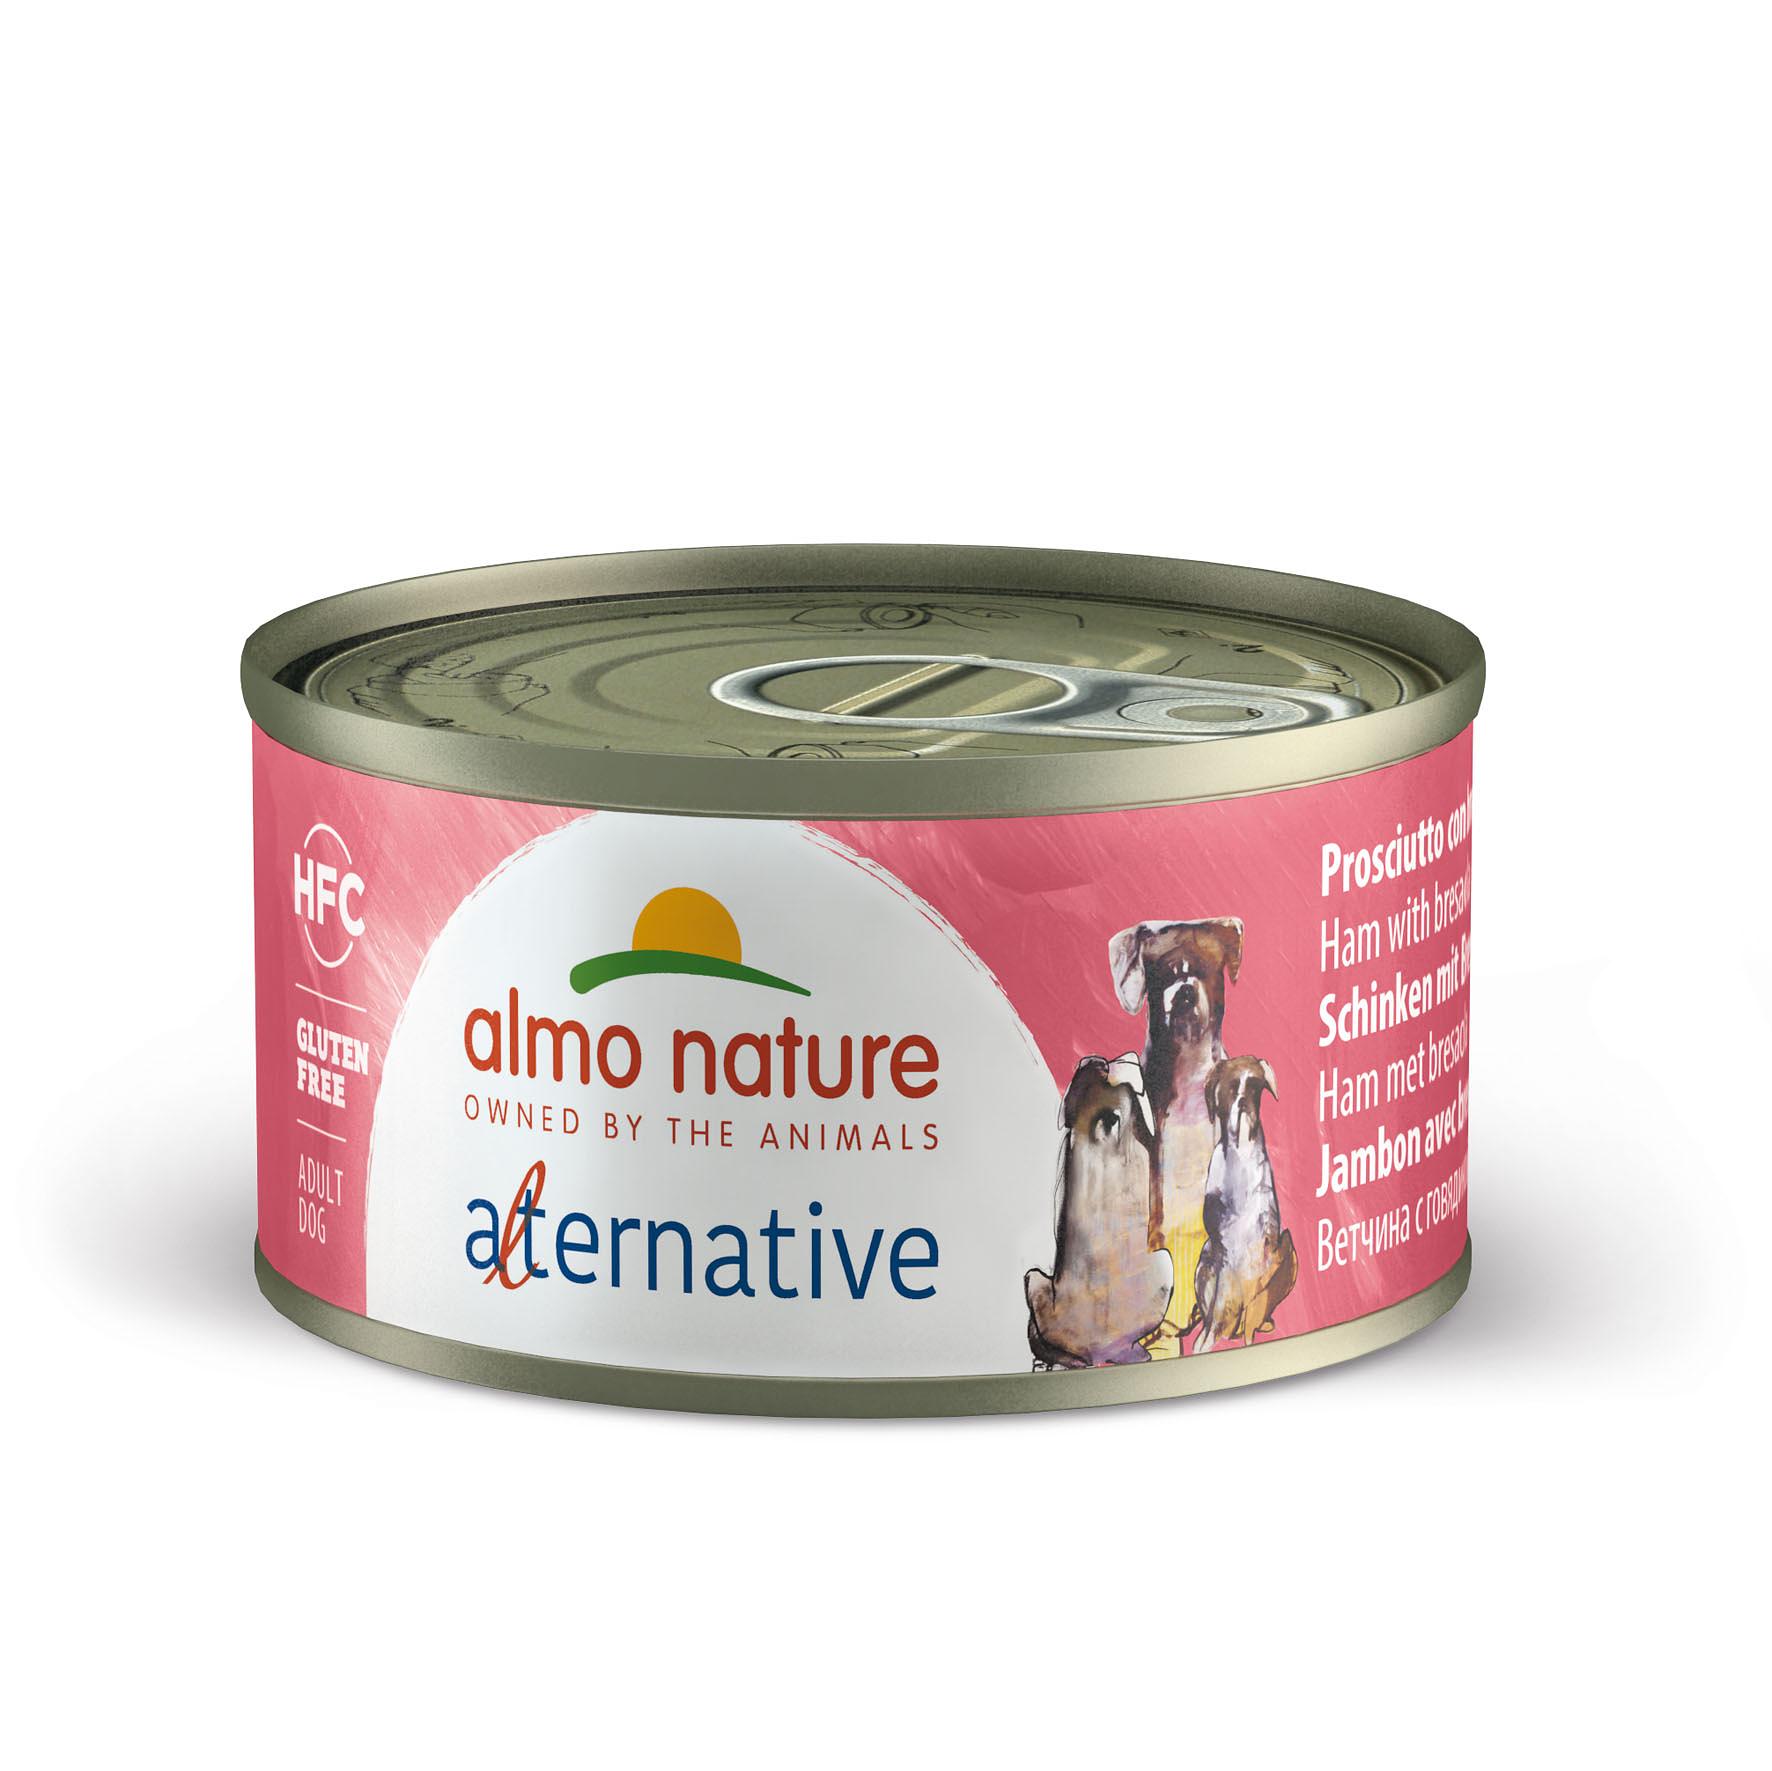 Almo Nature HFC Alternative Ham & Bresaola